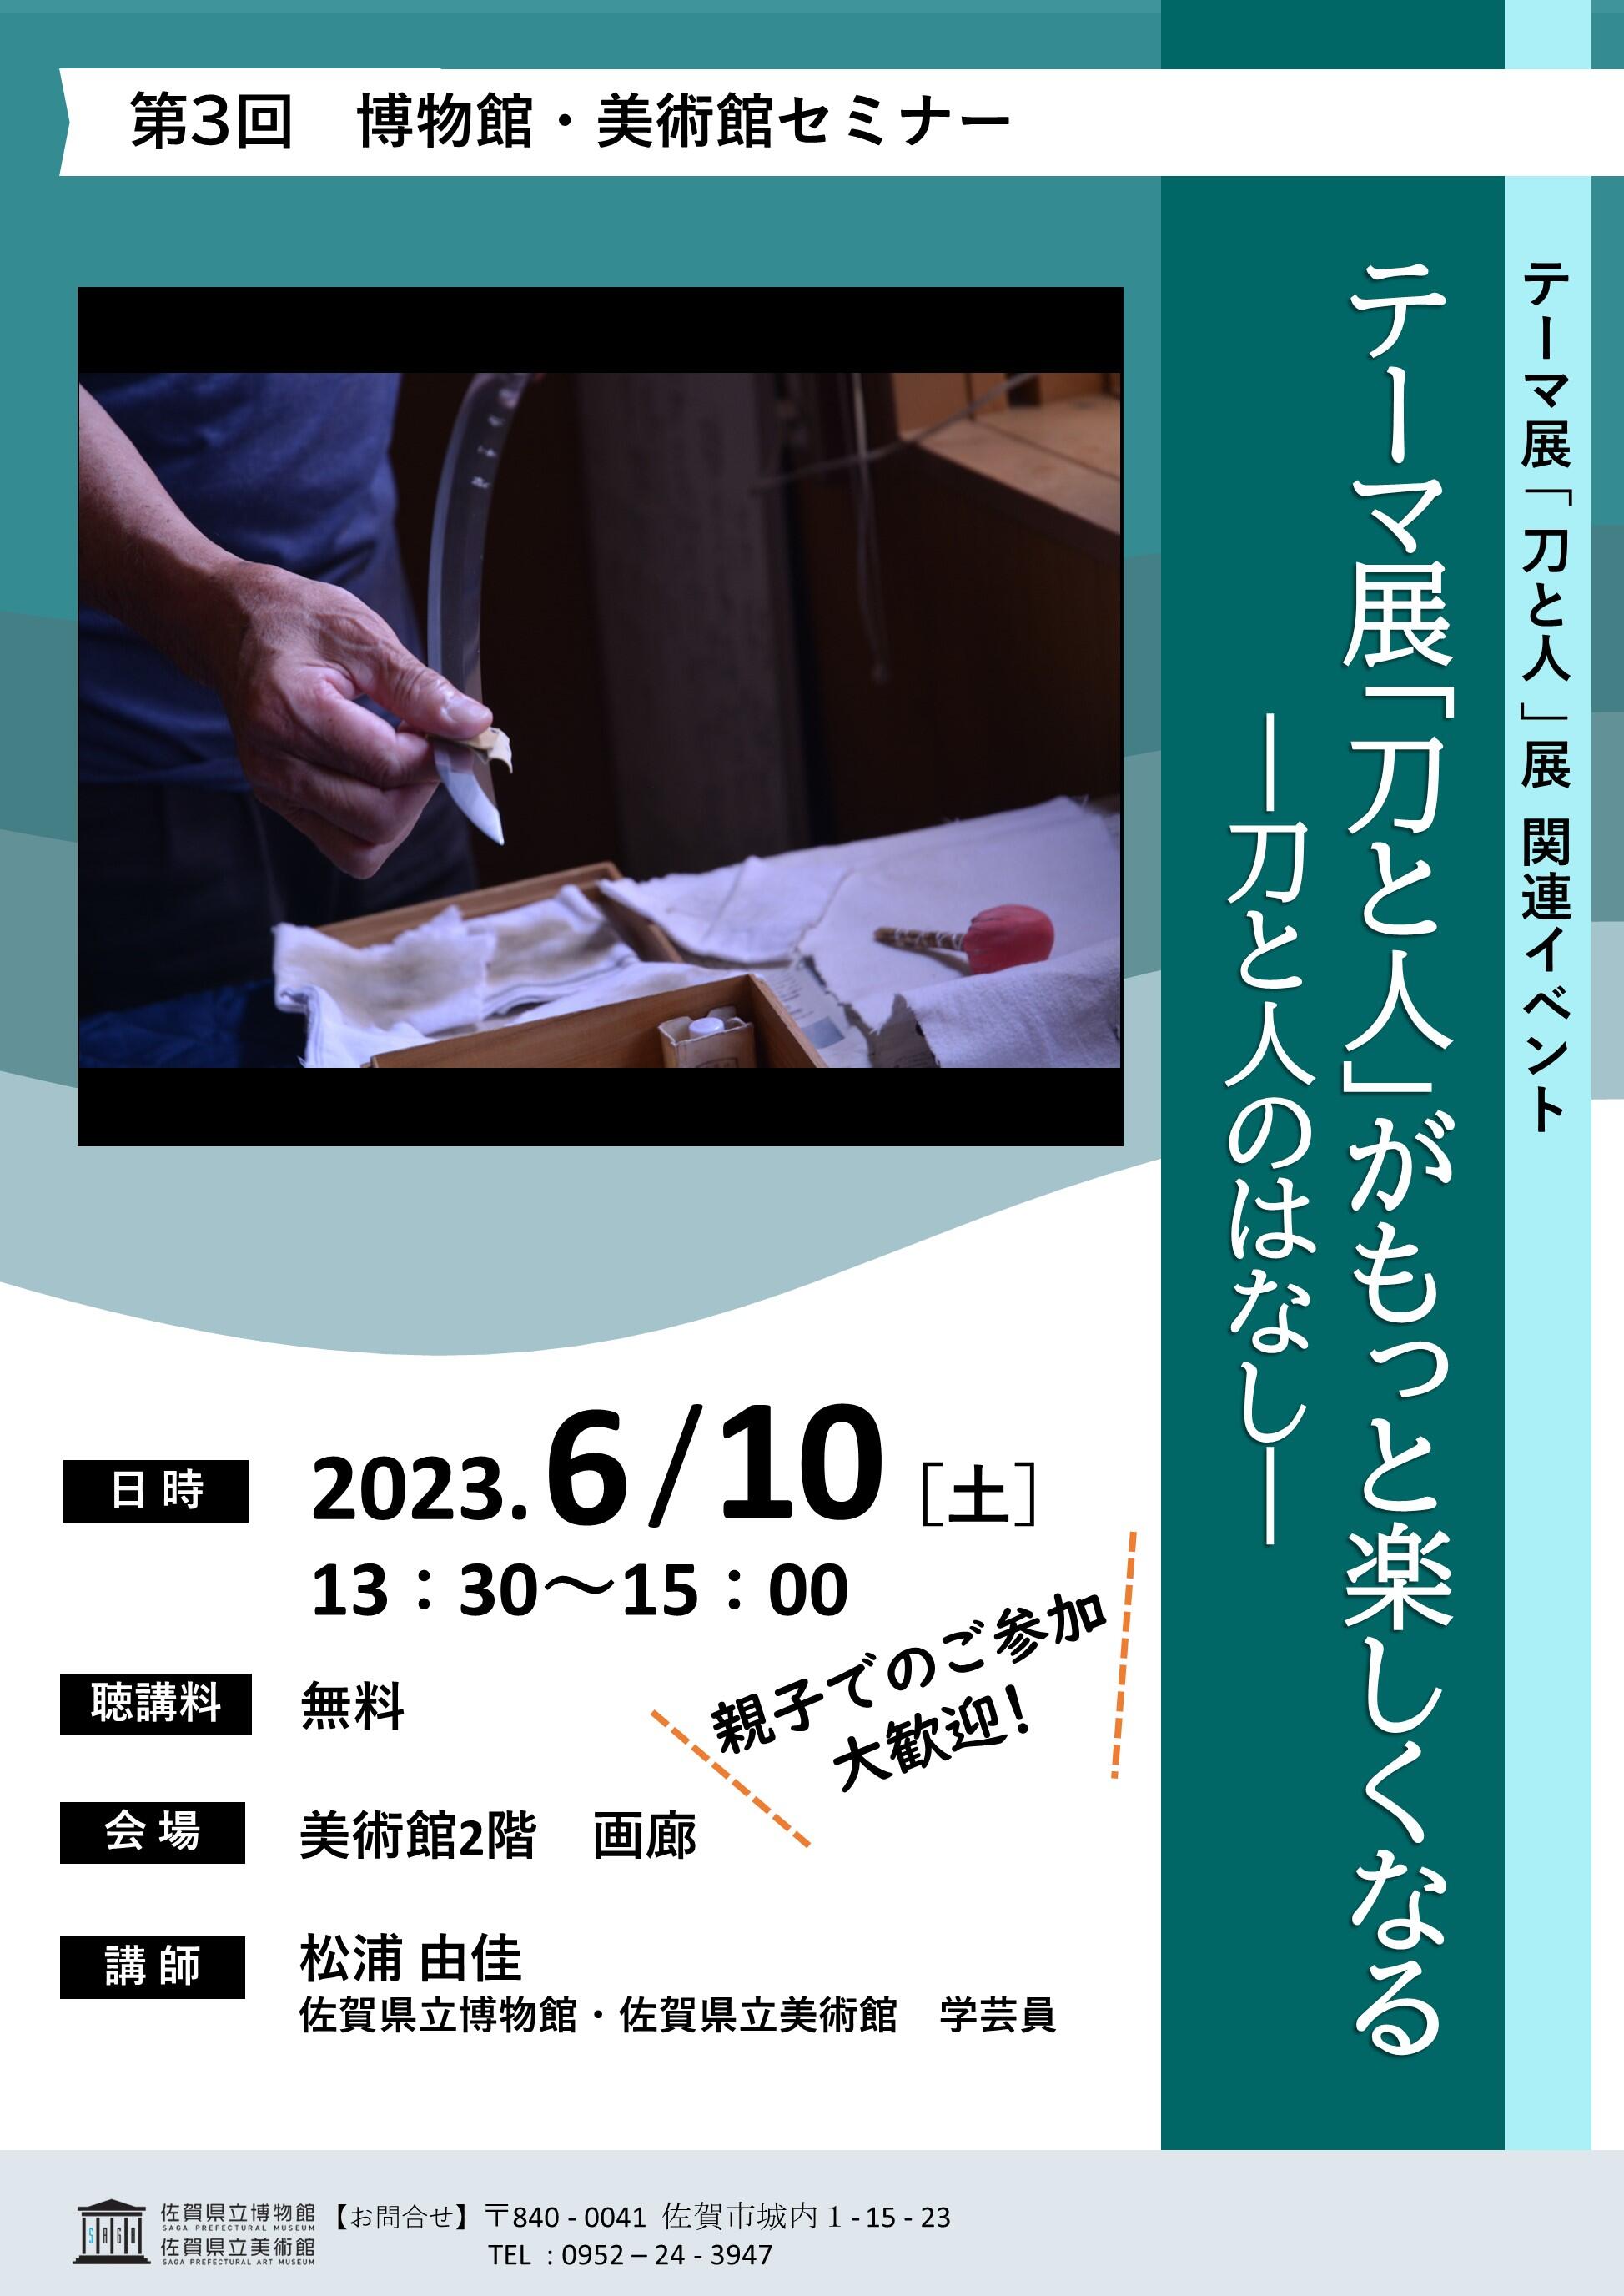 https://saga-museum.jp/museum/event/images/fc6ebadf0c6c7922bc8d0c0f4bb0266c.jpg